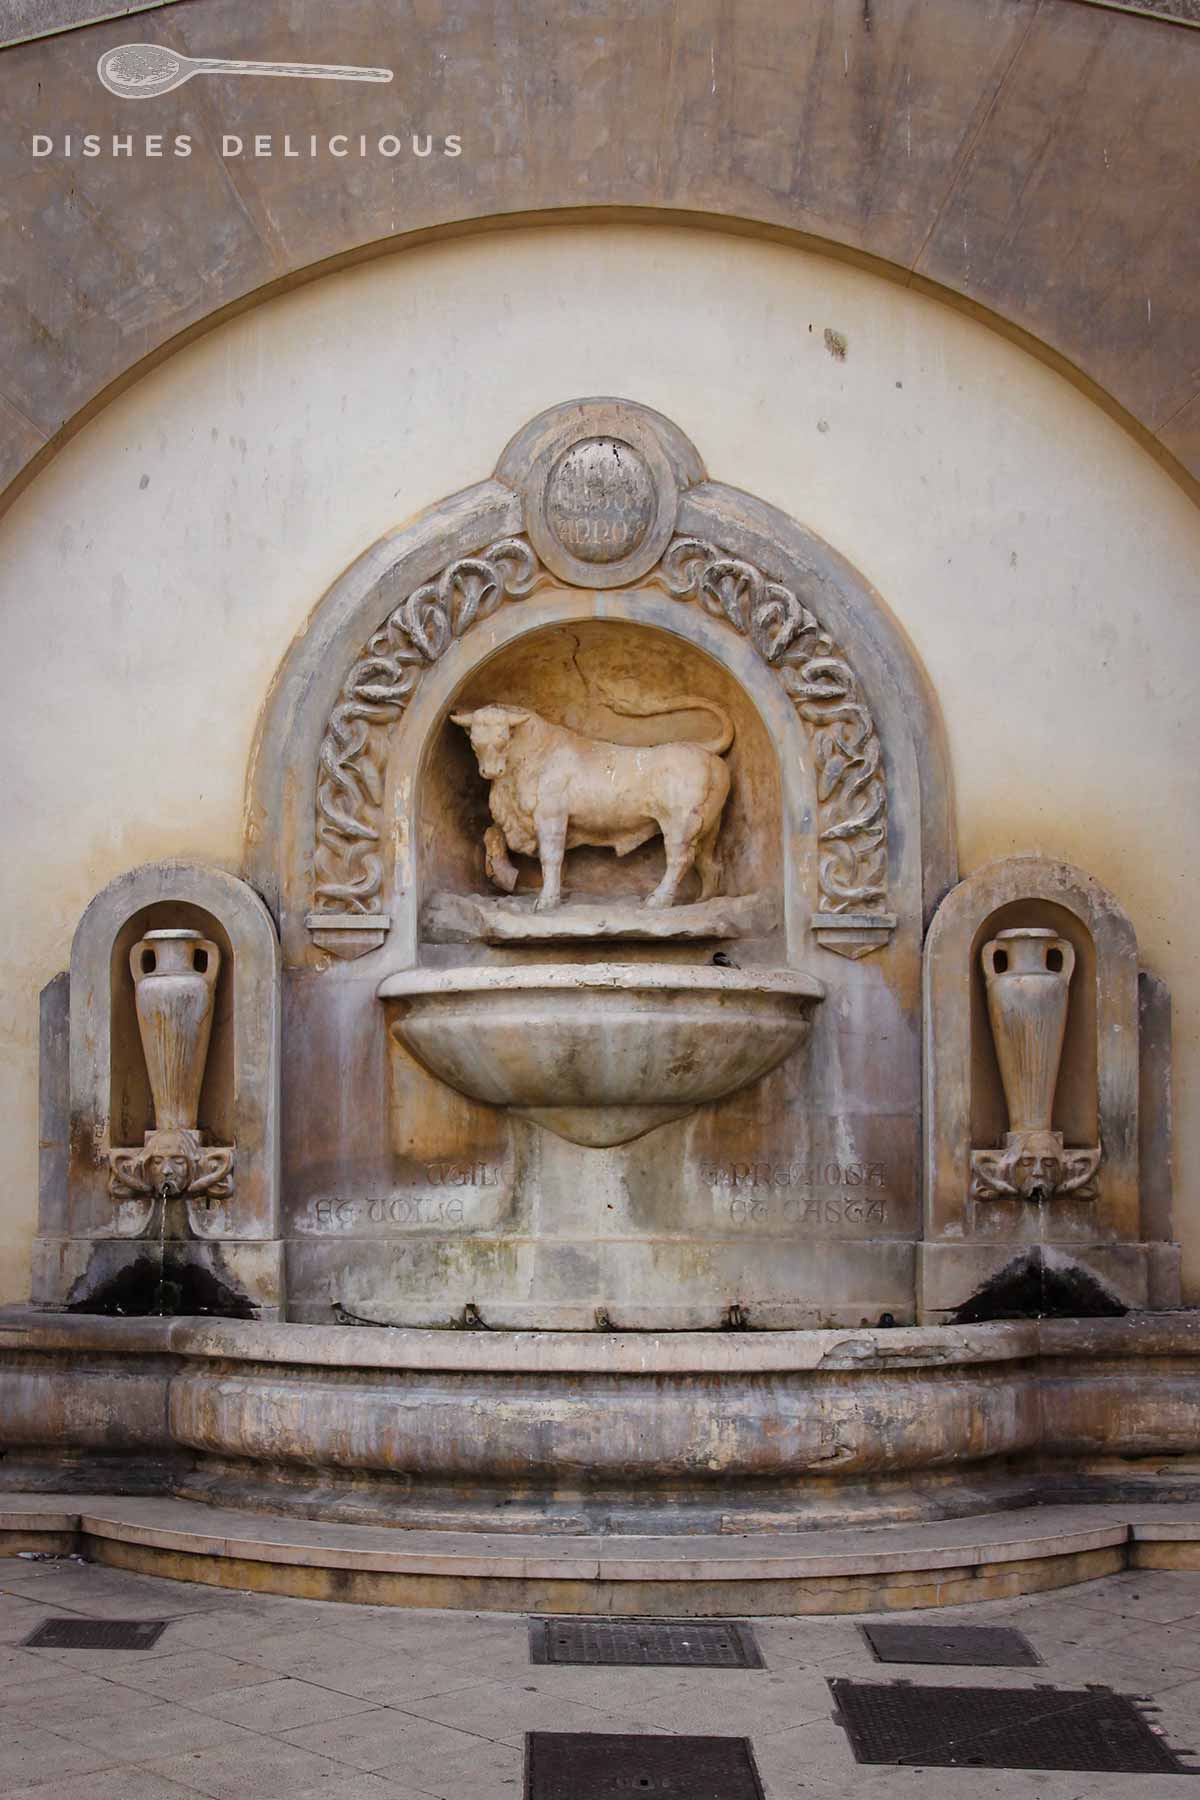 Ein steinener Brunnen mit einer Stierfigur oberhalb der Wasserschale. Rechts und links ist eine Amphore in den Brunnen eingearbeitet.